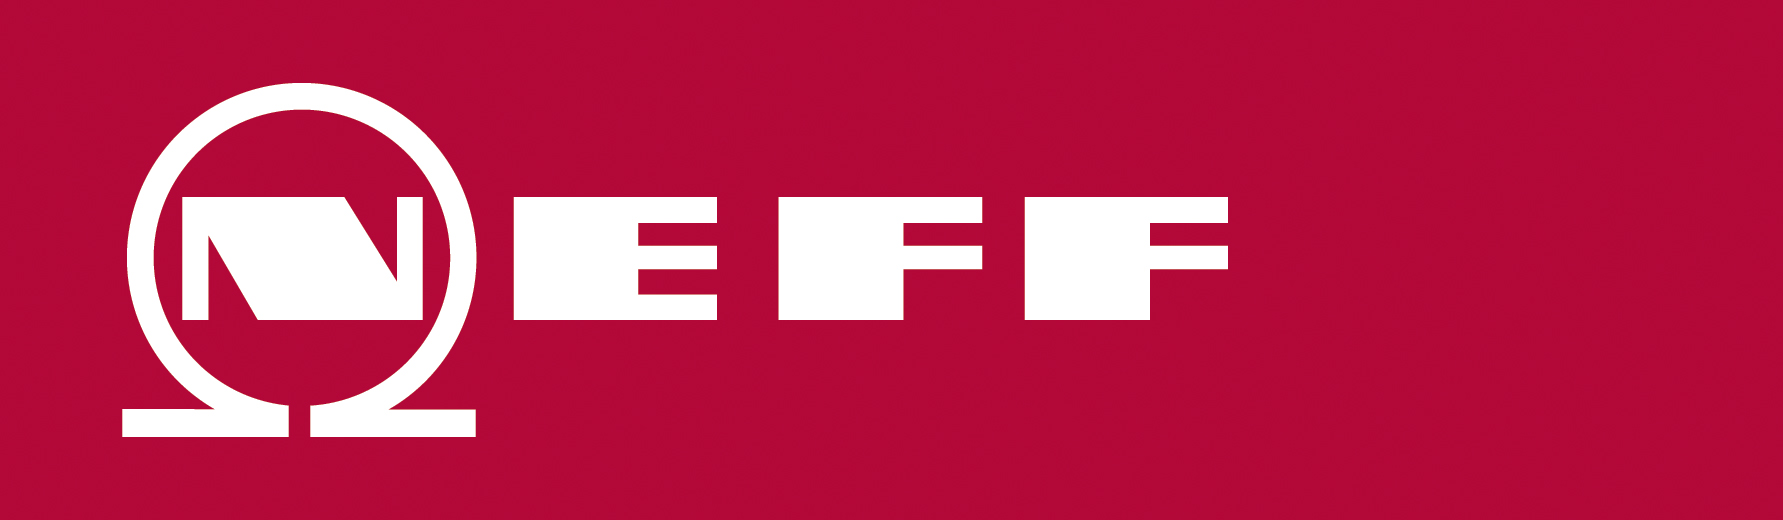 Neff_Logo_No_Strap_New_CMYK